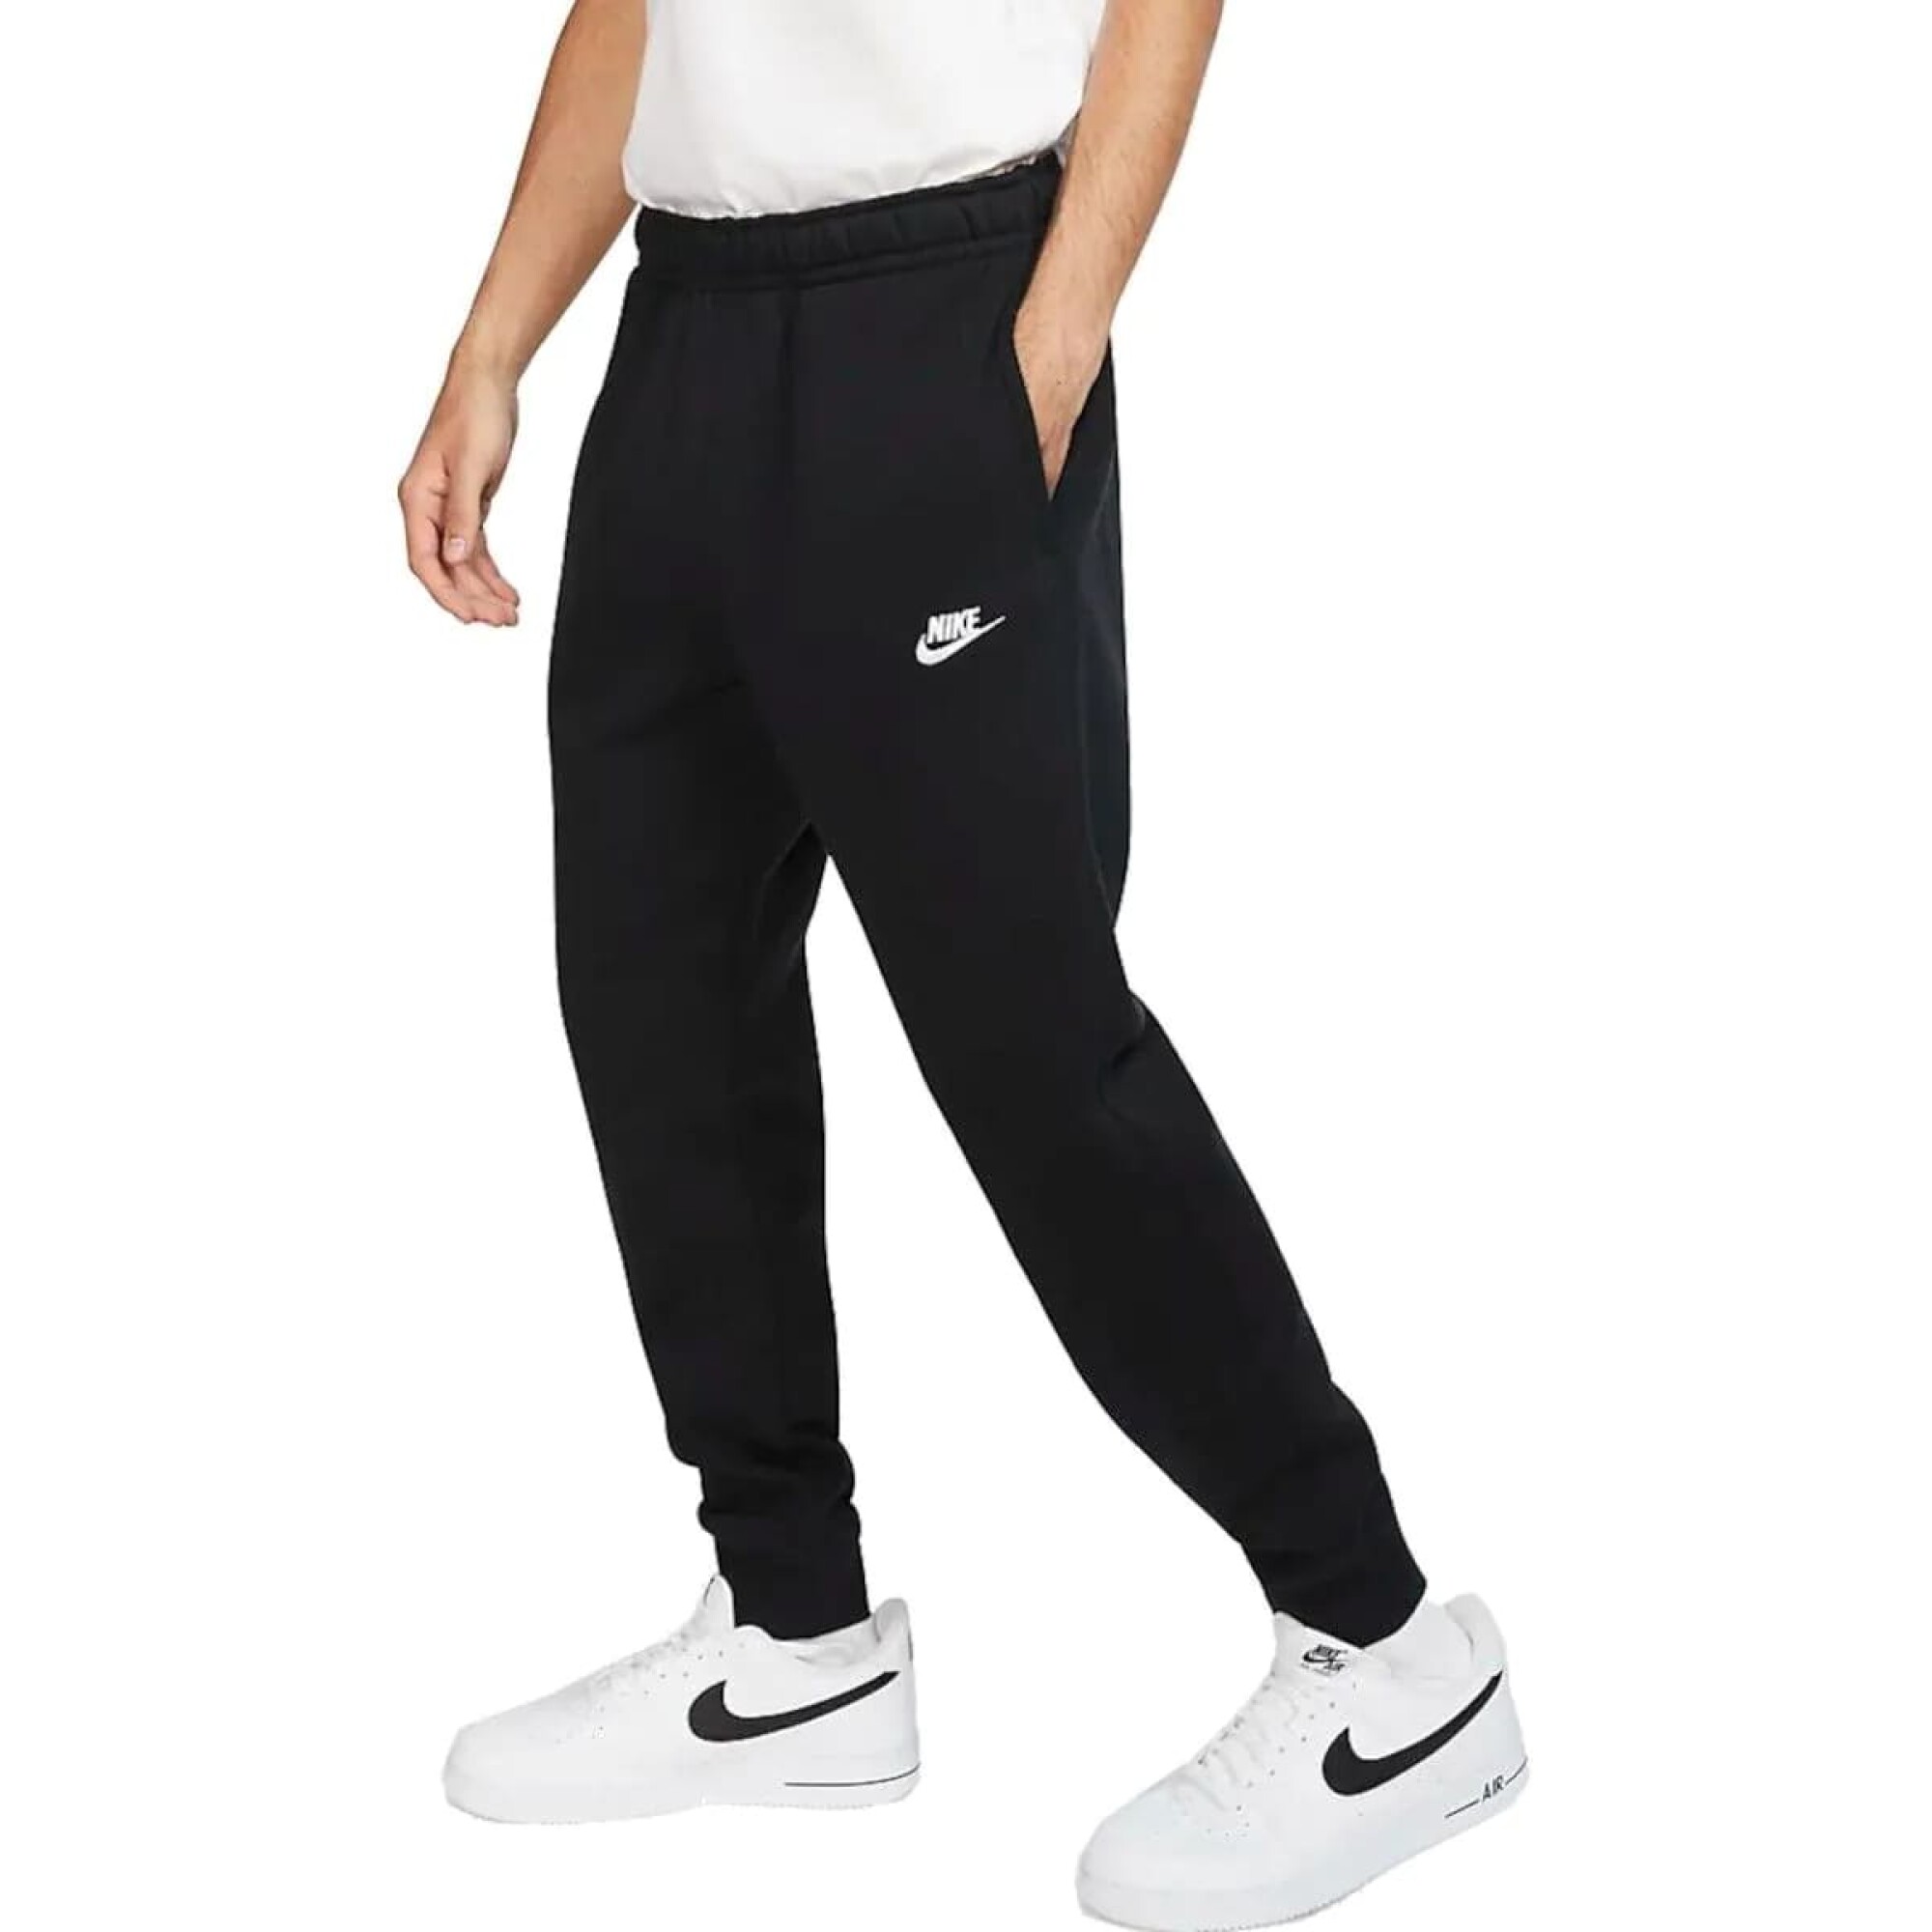 Pantalon Nike Moda Hombre Negro Clasico Club Jggr - S/C — Menpi